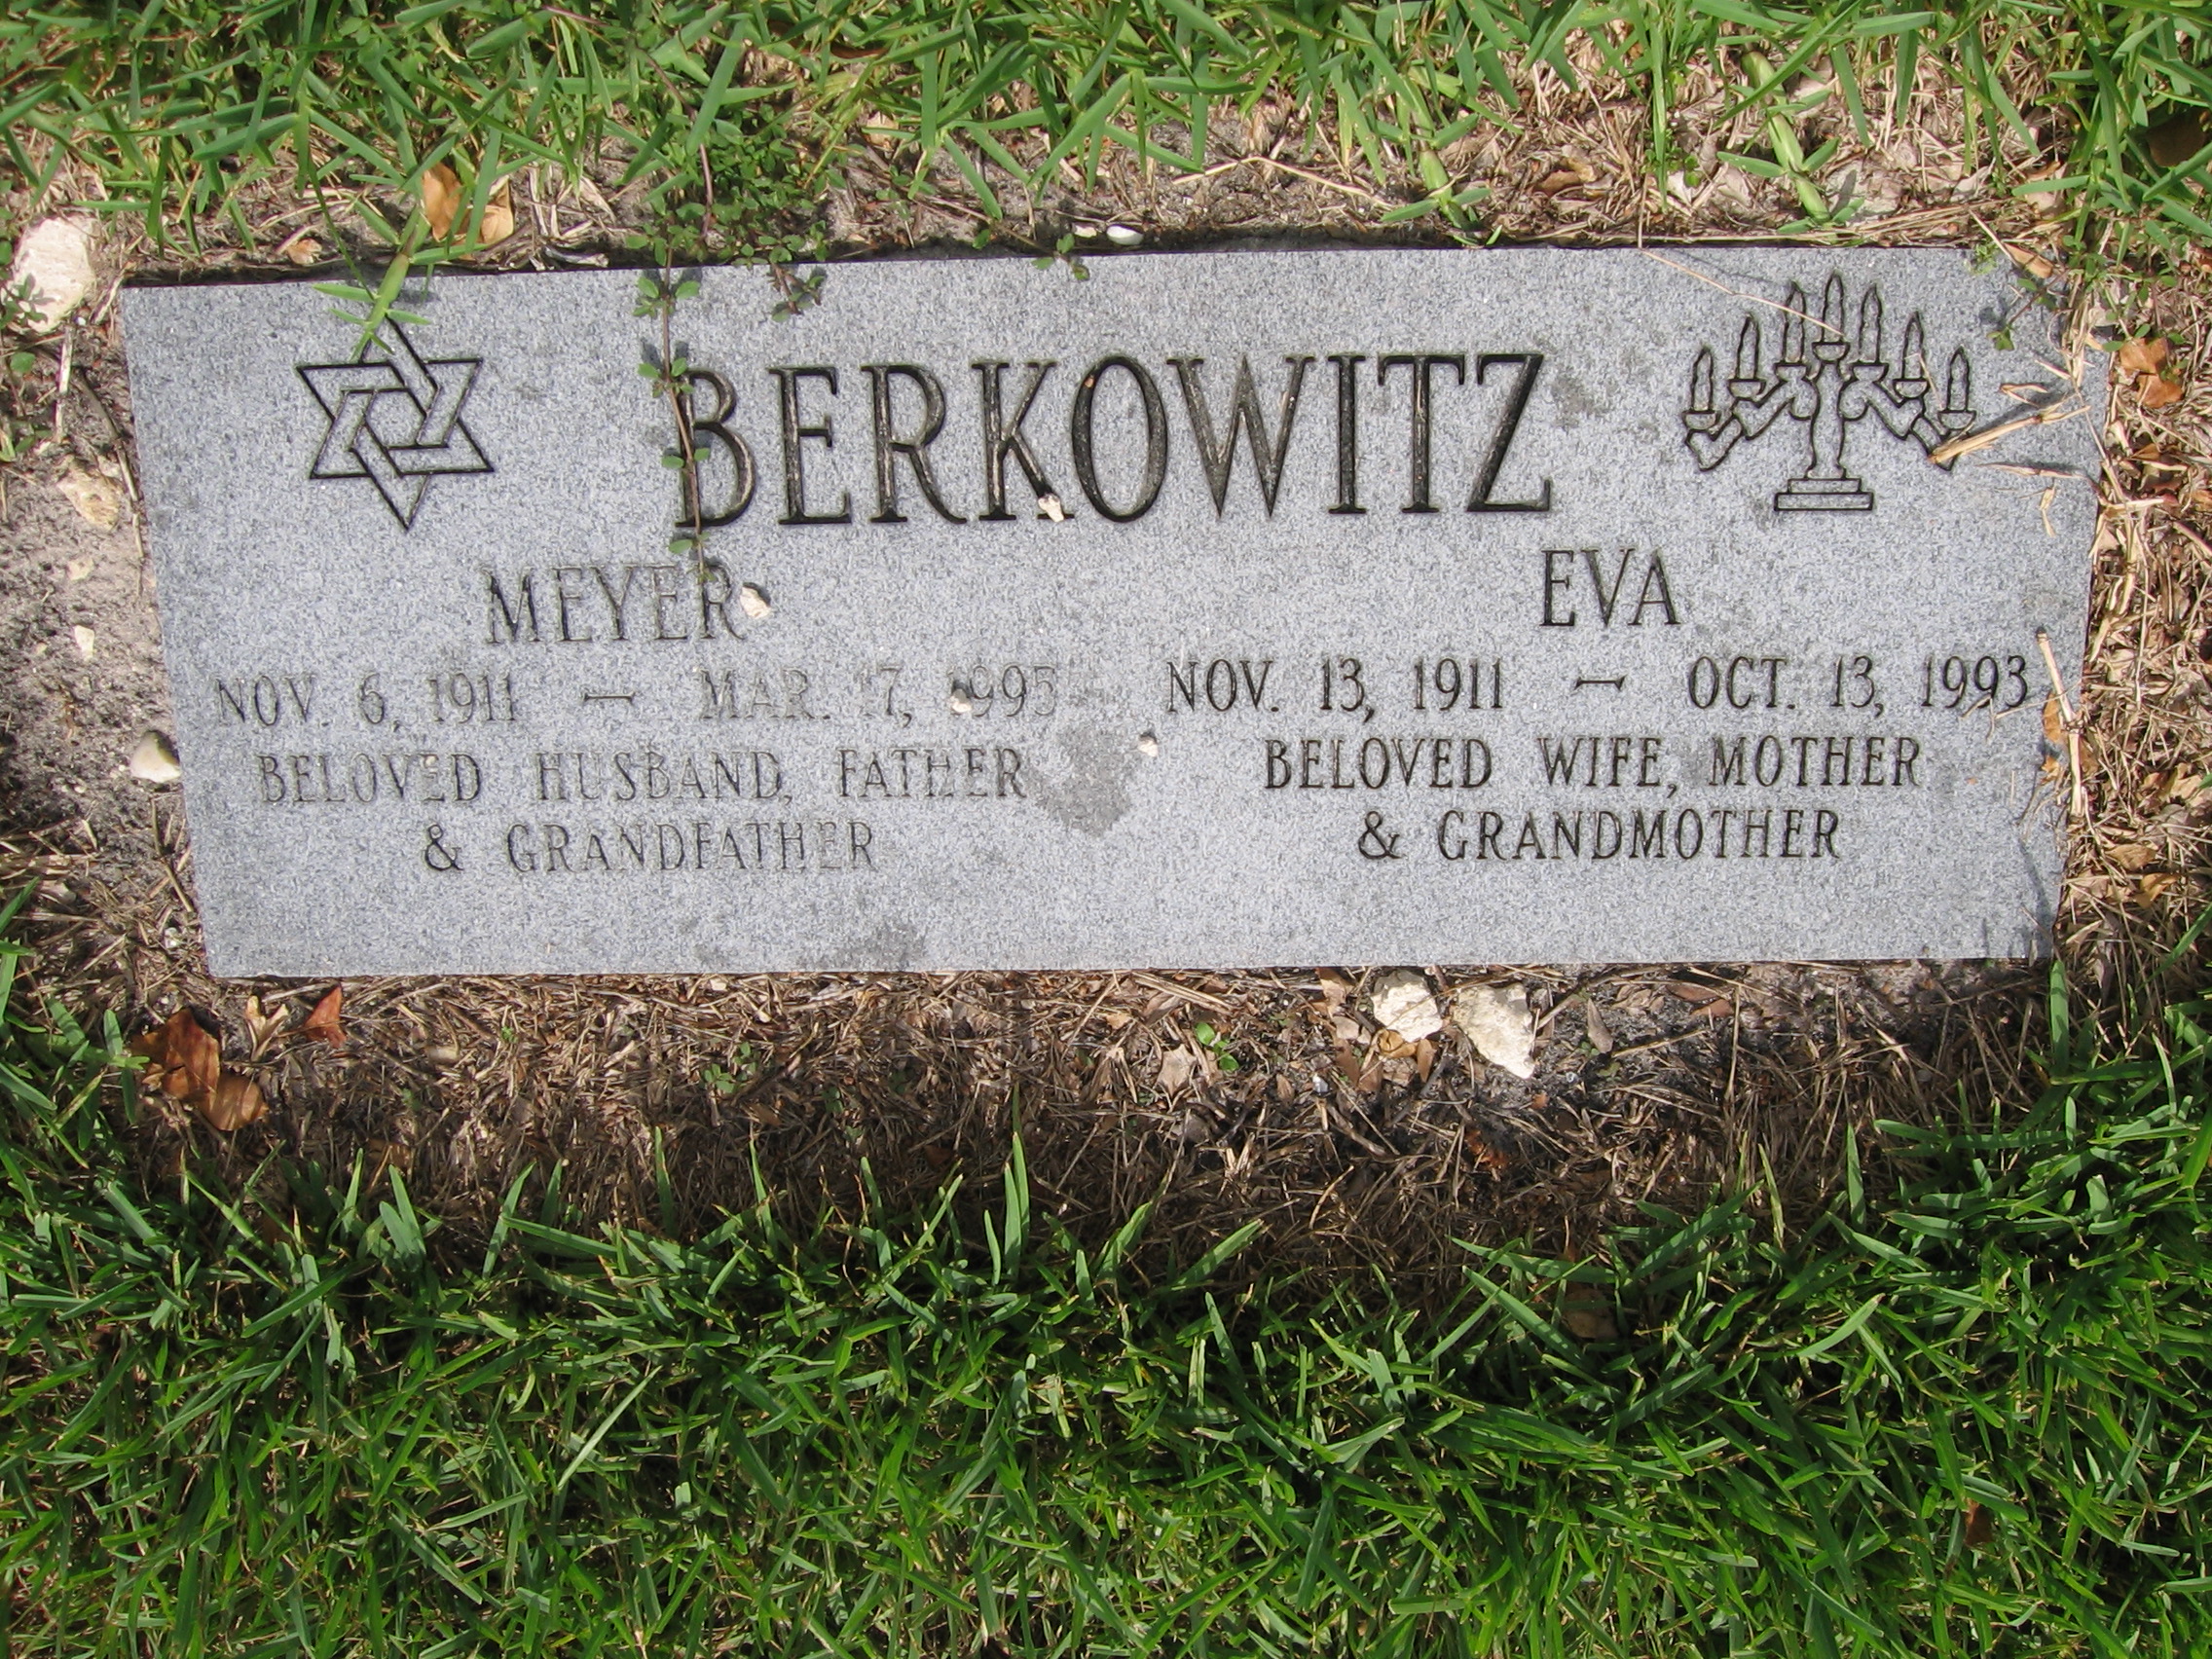 Meyer Berkowitz